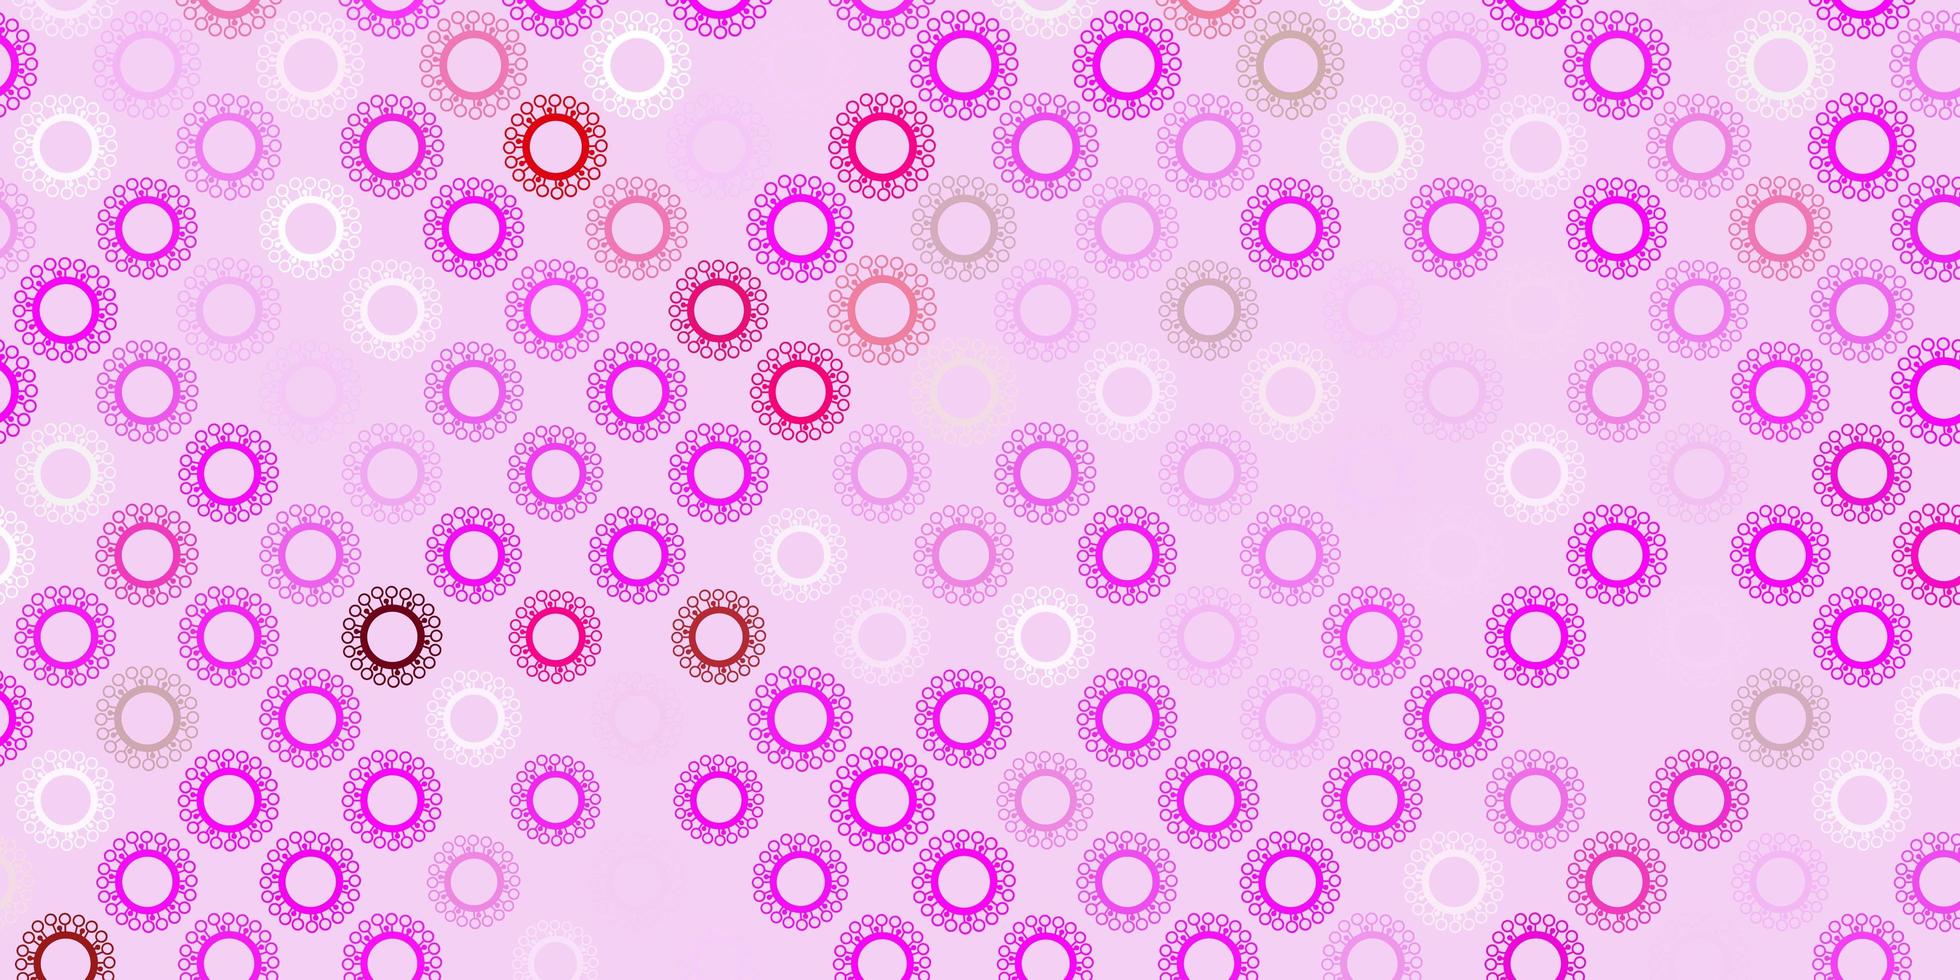 modelo de vetor roxo, rosa escuro com sinais de gripe.